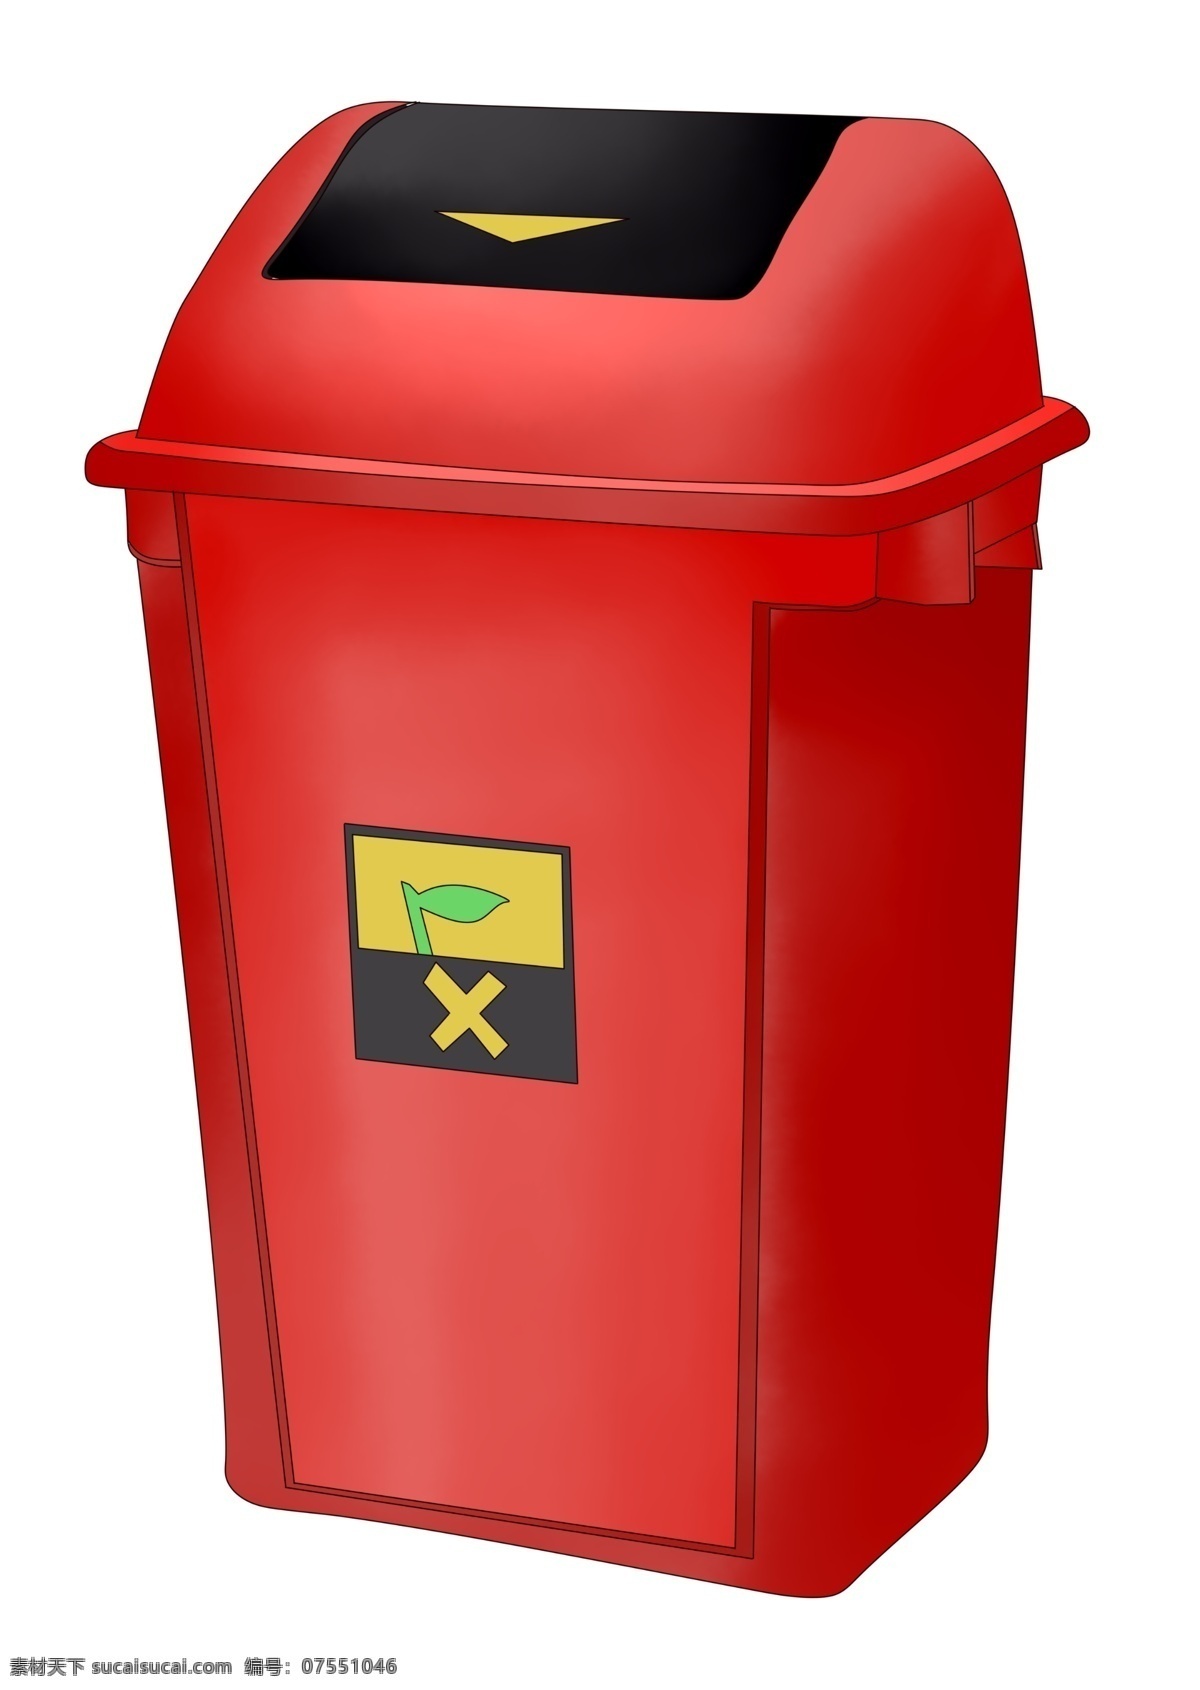 公共 垃圾桶 垃圾箱 公共垃圾桶 分类垃圾桶 红色垃圾桶 卫生日 清洁工具 红色插画